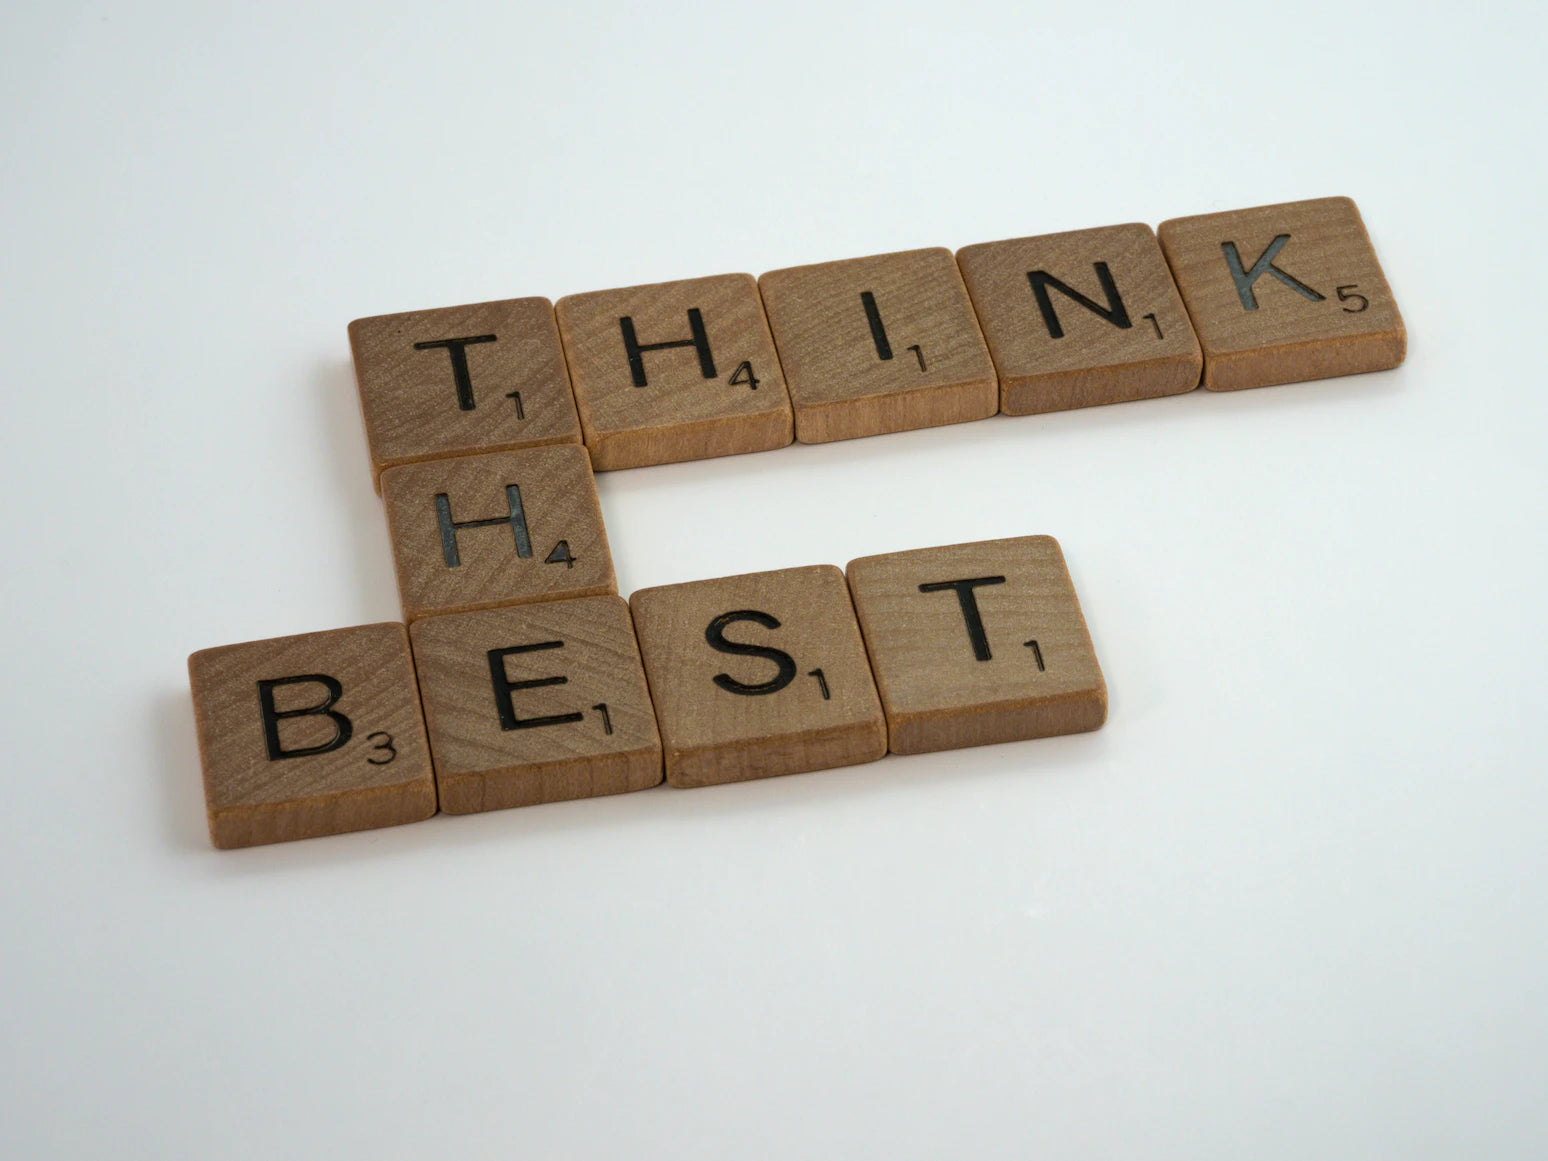 Scrabble-Bausteine aus Holz bilden die Worte "Think the best"